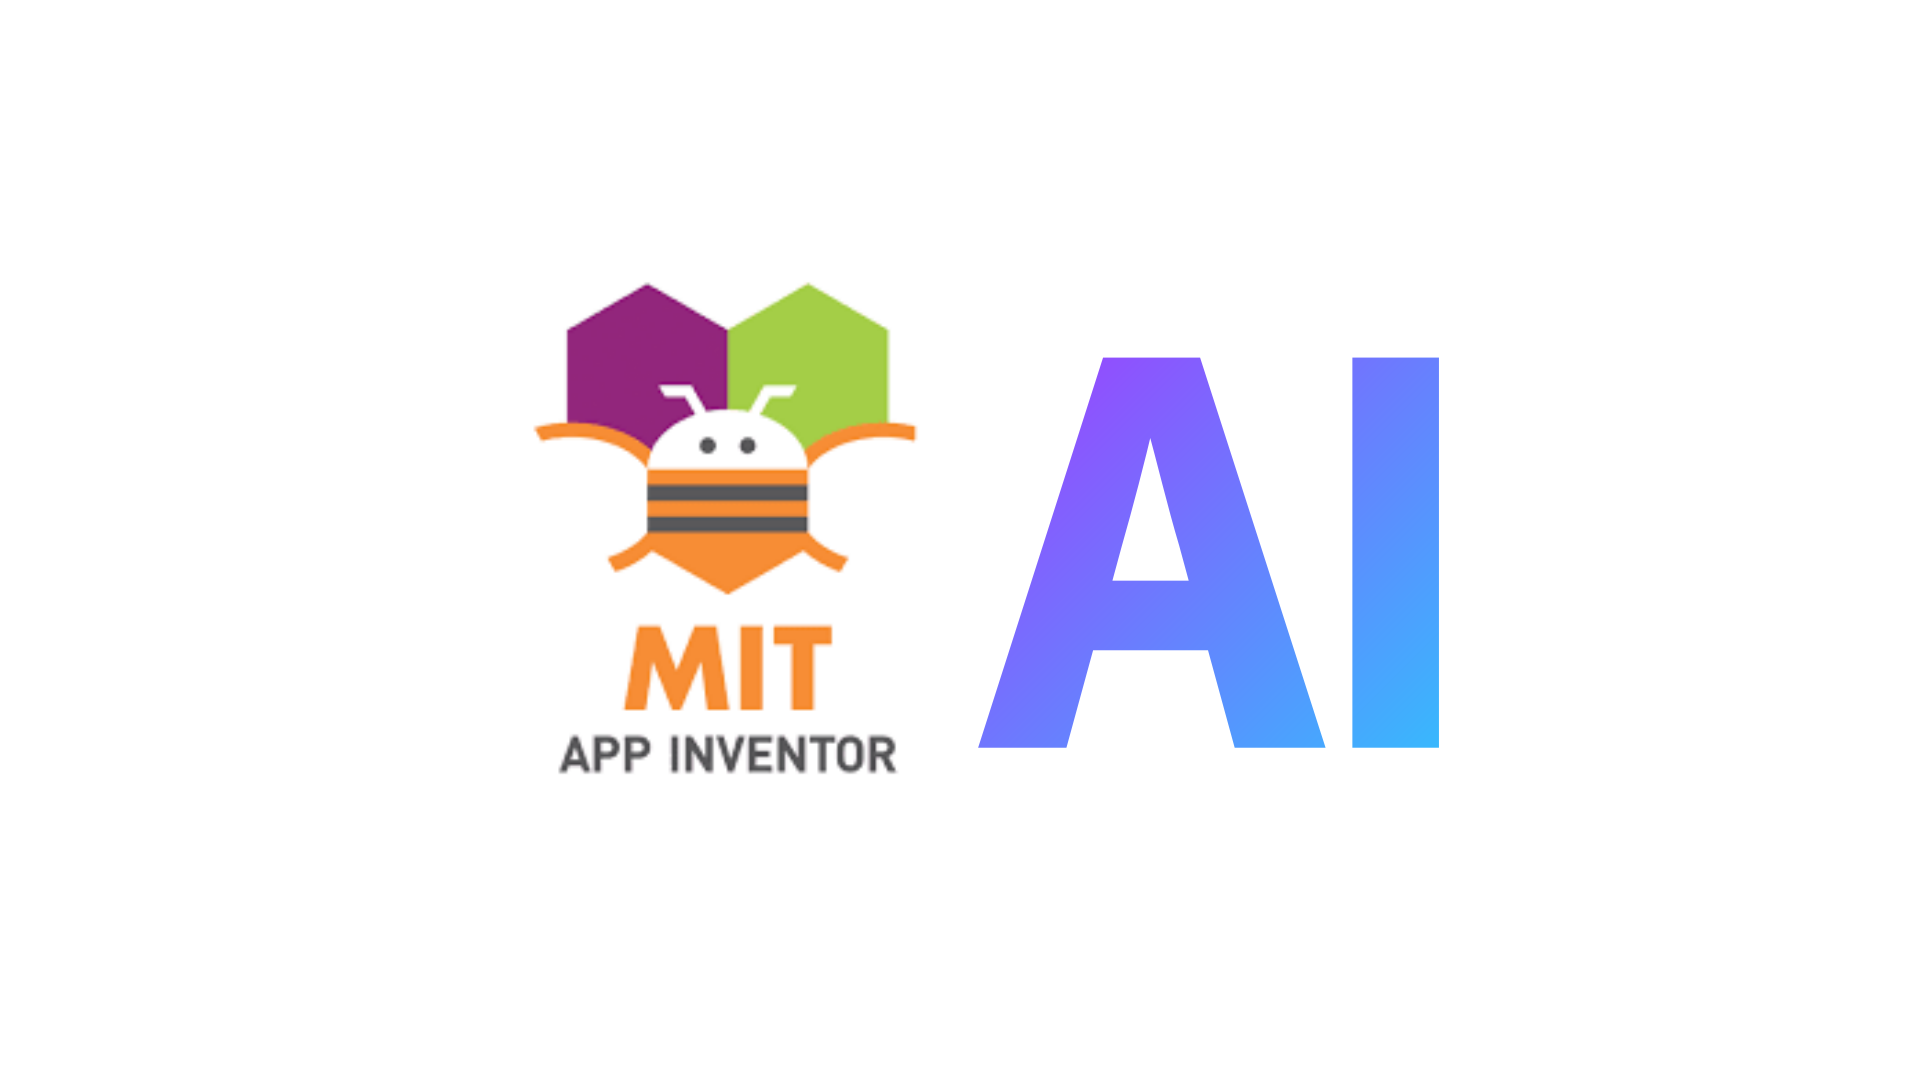 인공지능을 활용한 앱 만들기, 앱인벤터 AI